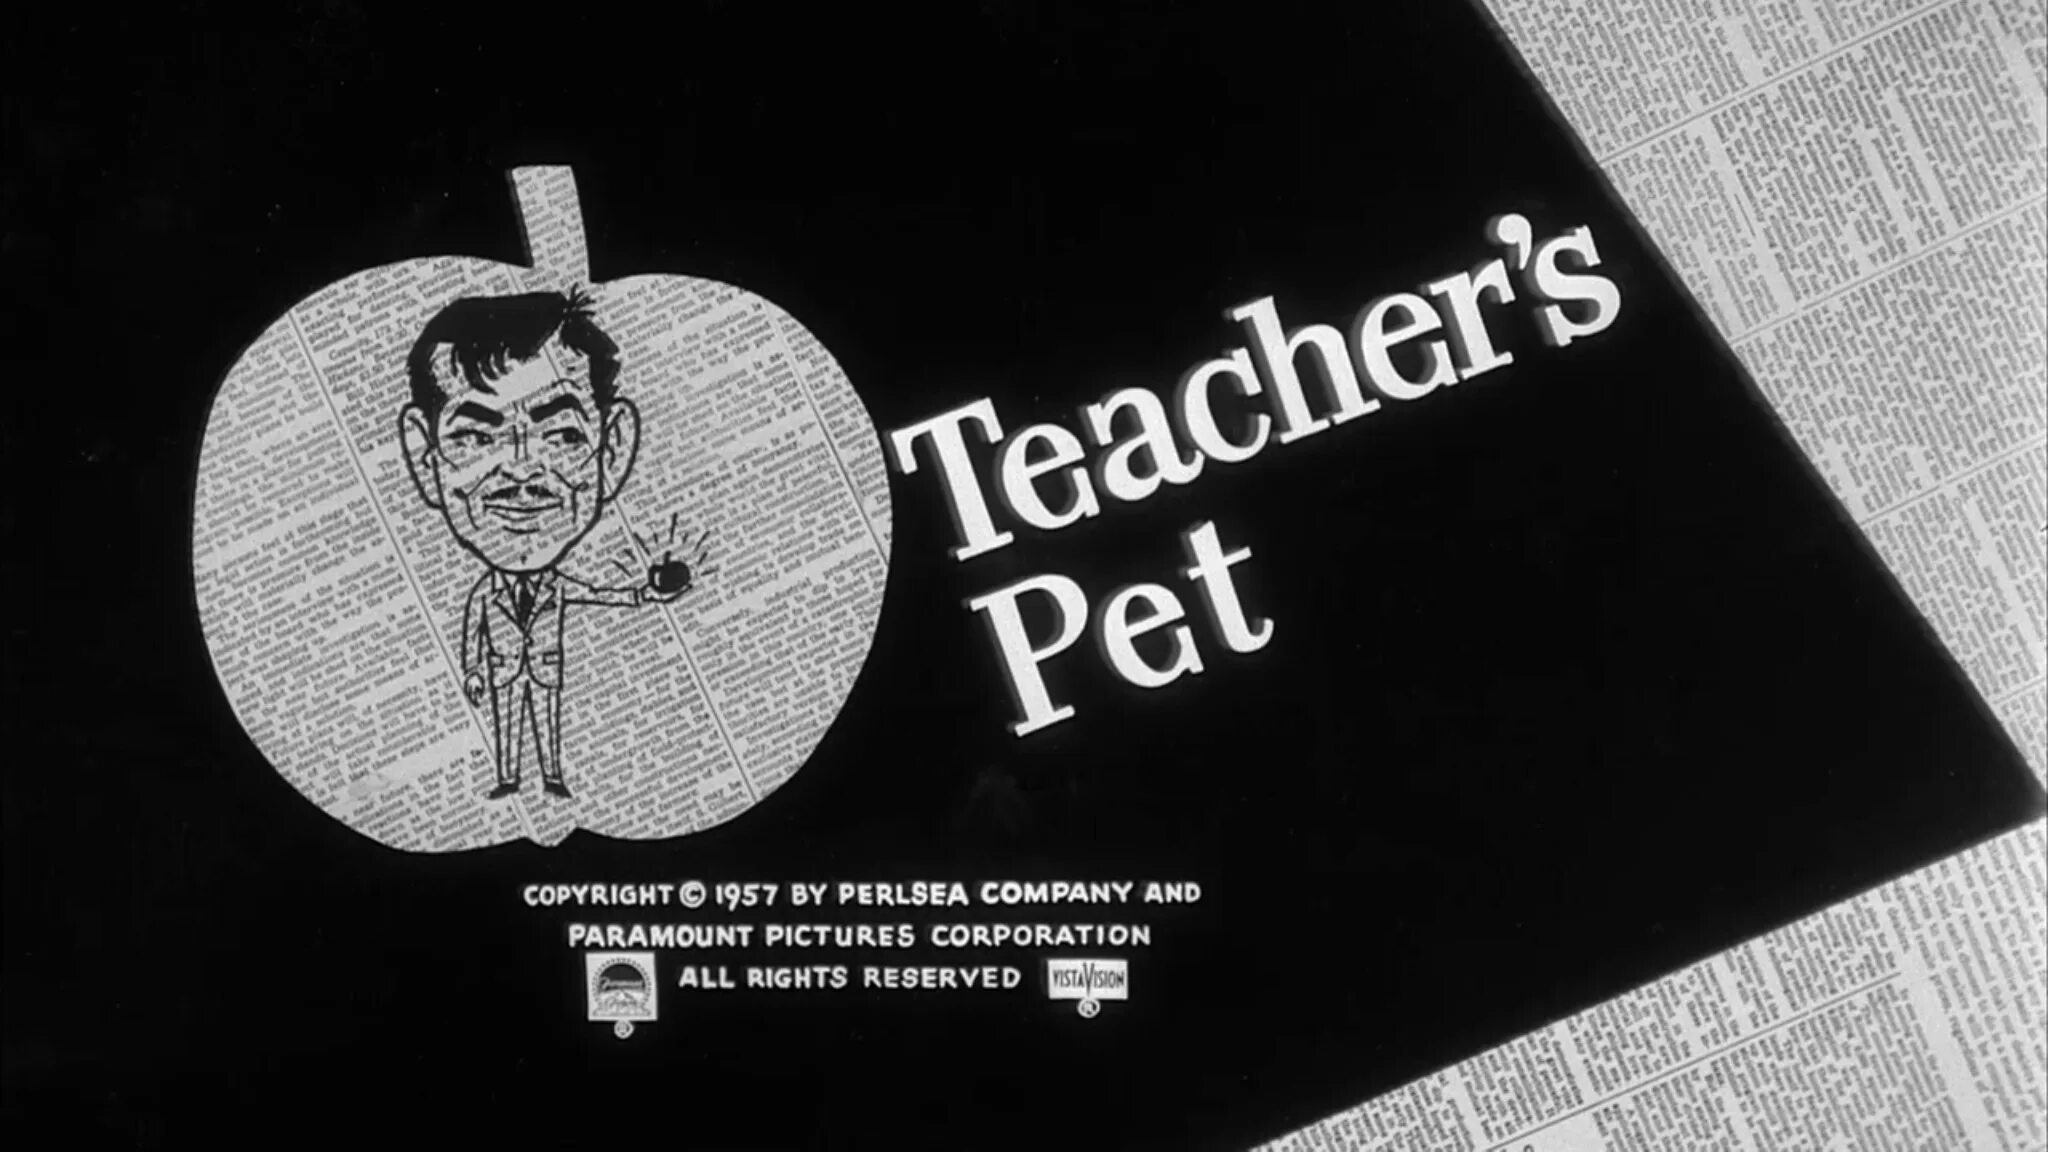 Любимец учителя (2004) Постер. Питомец учителя the teachers Pet.